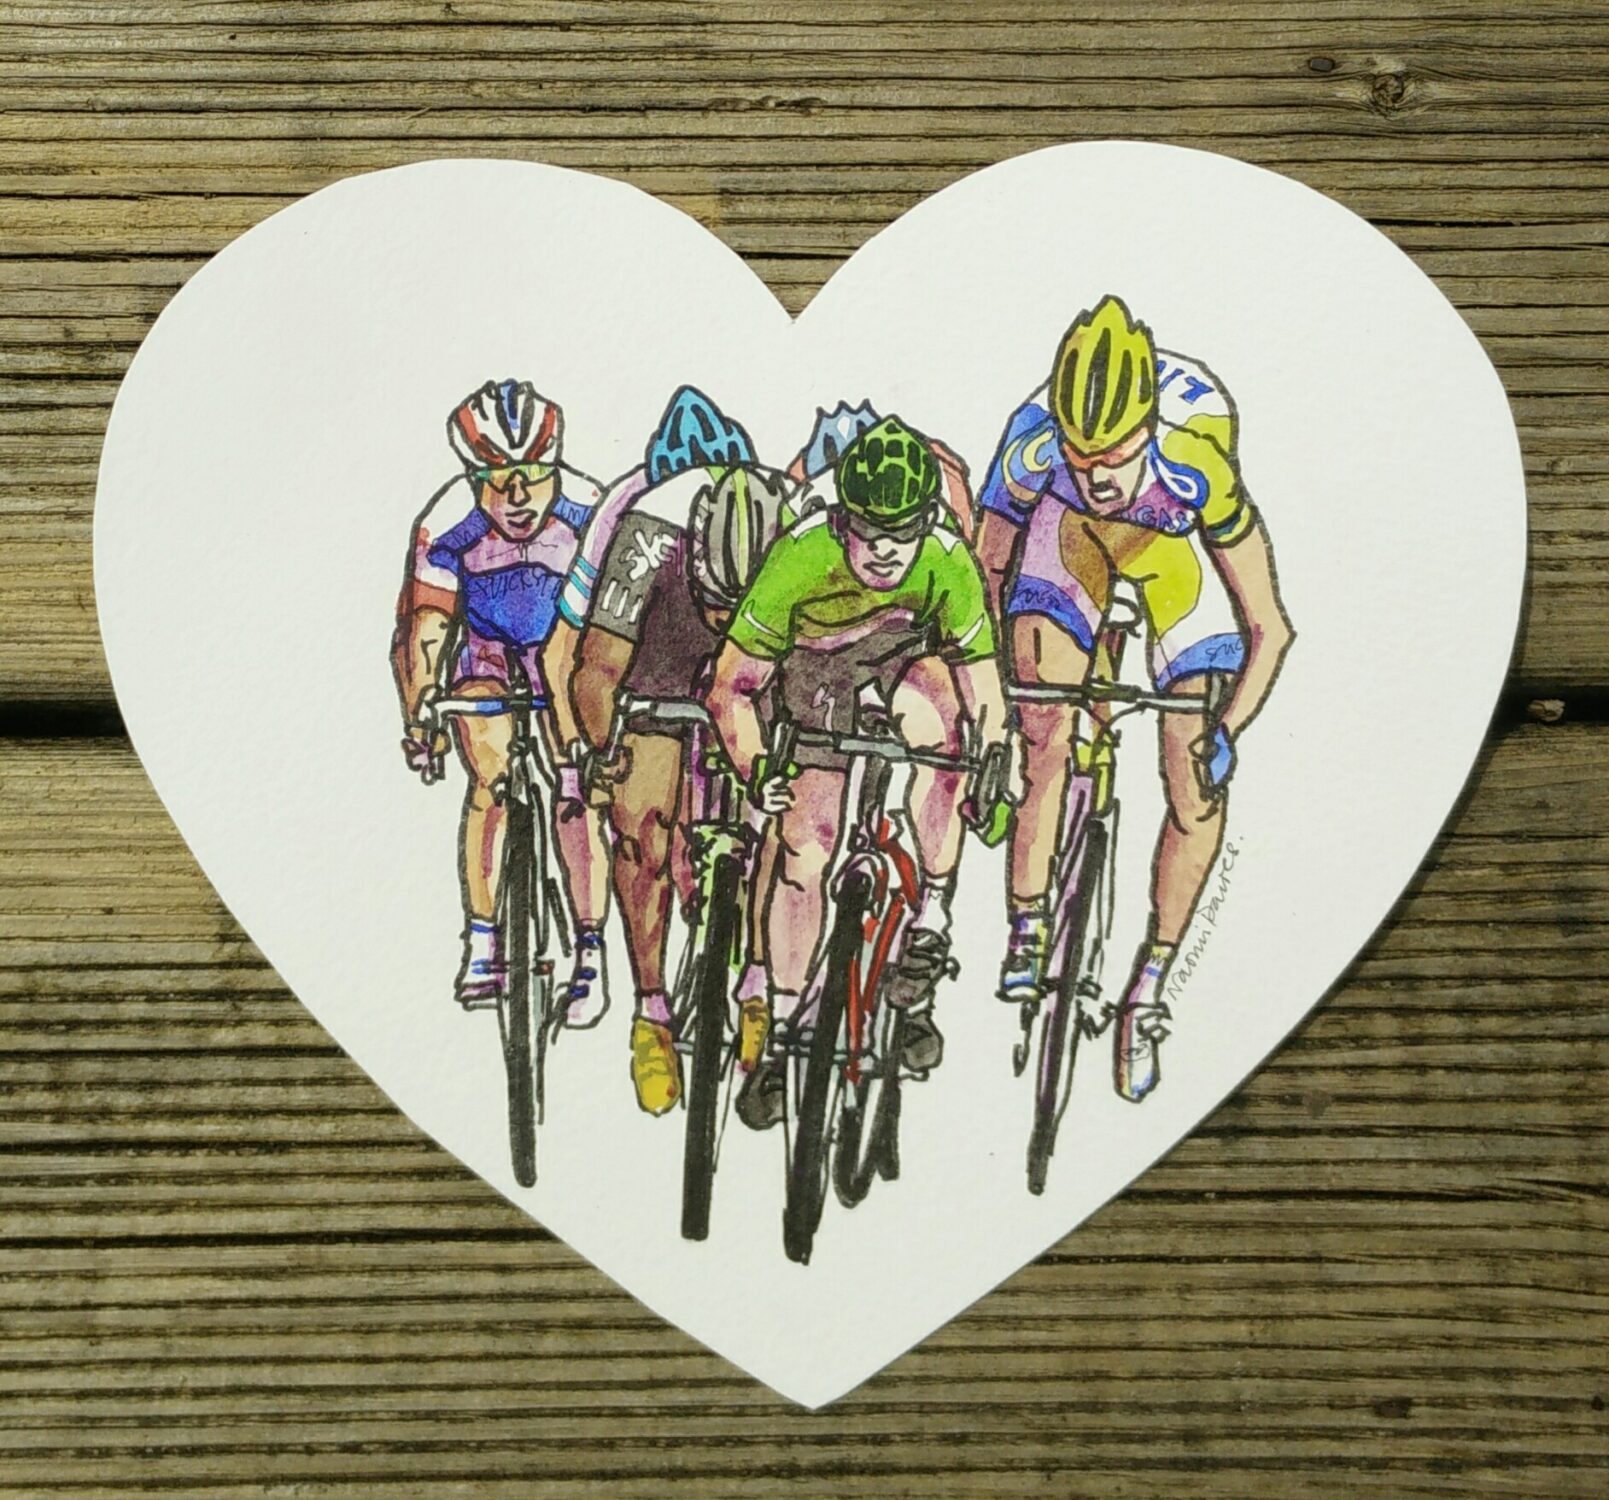 A watercolour of Tour de France sprinters arriving at the Tour de France finish line in a heart shape